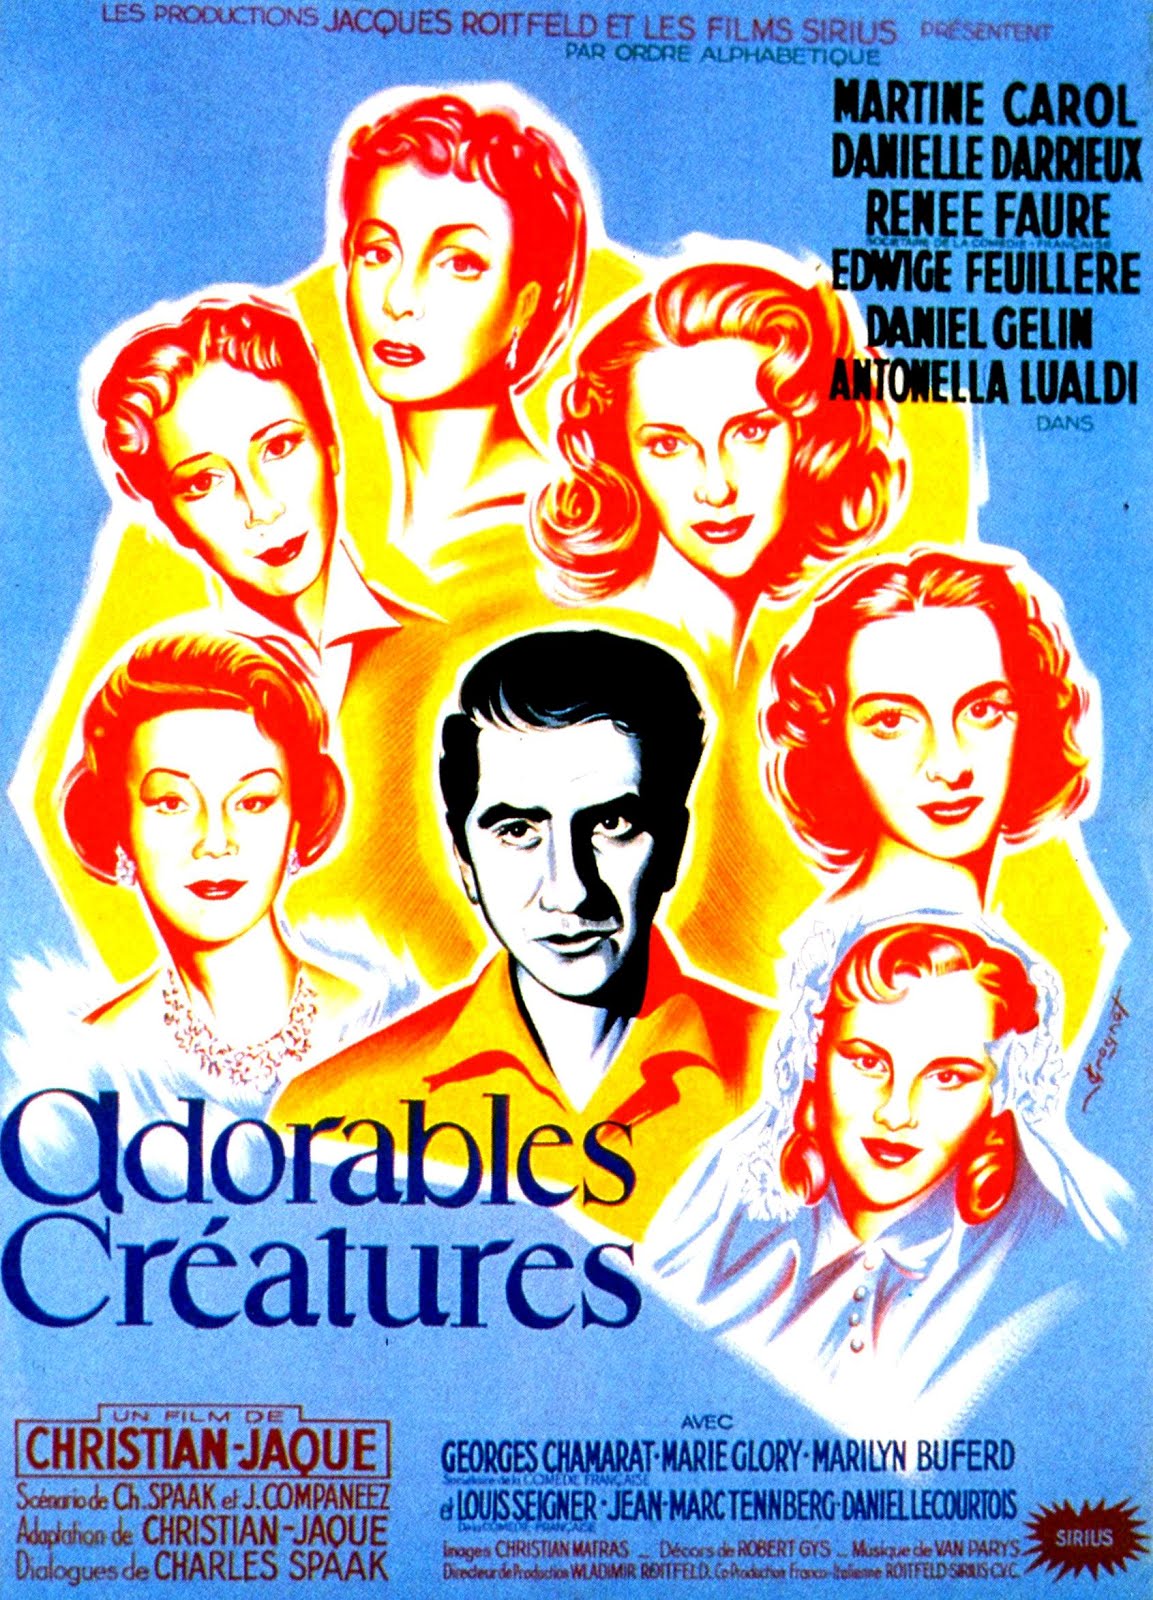 Adorables créatures (1952) Christian-Jaque - Adorables créatures (17.03.1952 / 23.05.1952)